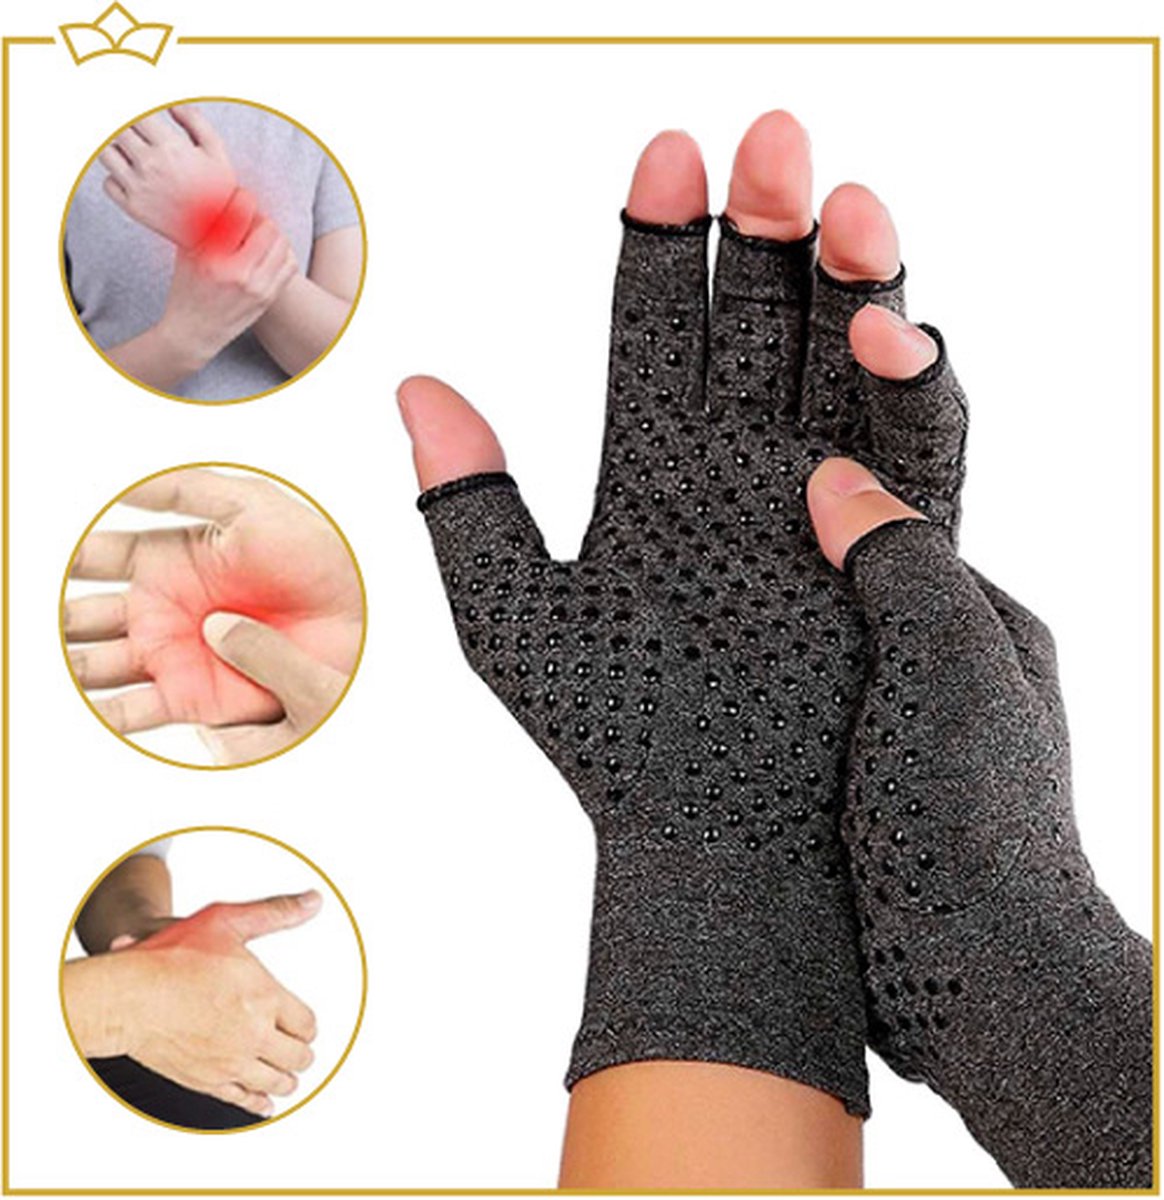 ATTREZZO® Compressie handschoenen - Grijs - Maat L - Anti slip - One size - Ideaal voor patiënten van Reuma - Artritis - Artrose